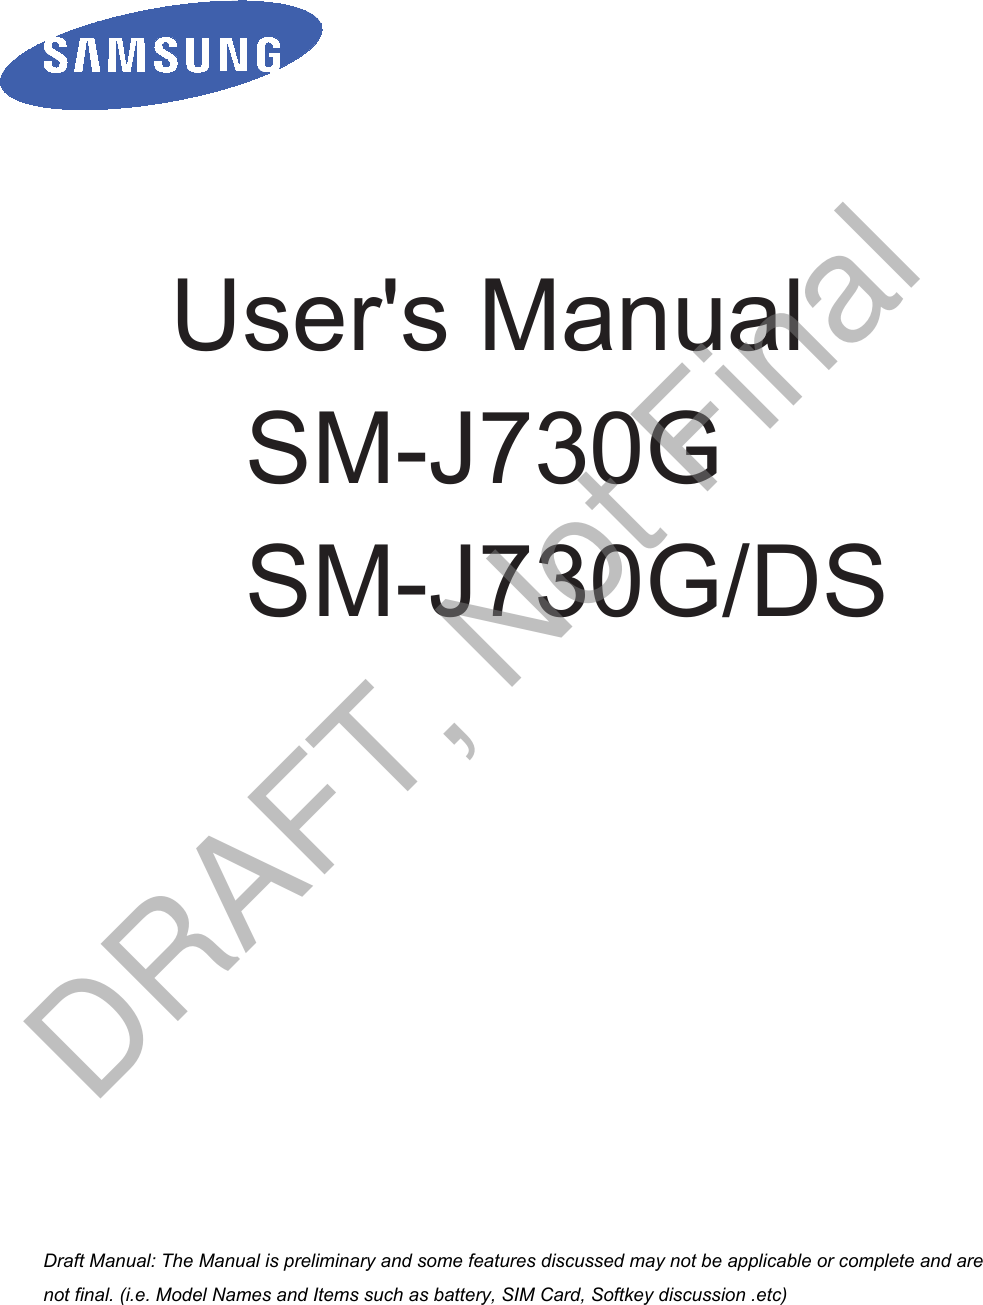          User&apos;s Manual SM-J730G SM-J730G/DS         a ana  ana  na and  a dd a n  aa   and a n na  d a and   a a  ad  dn DRAFT, Not Final